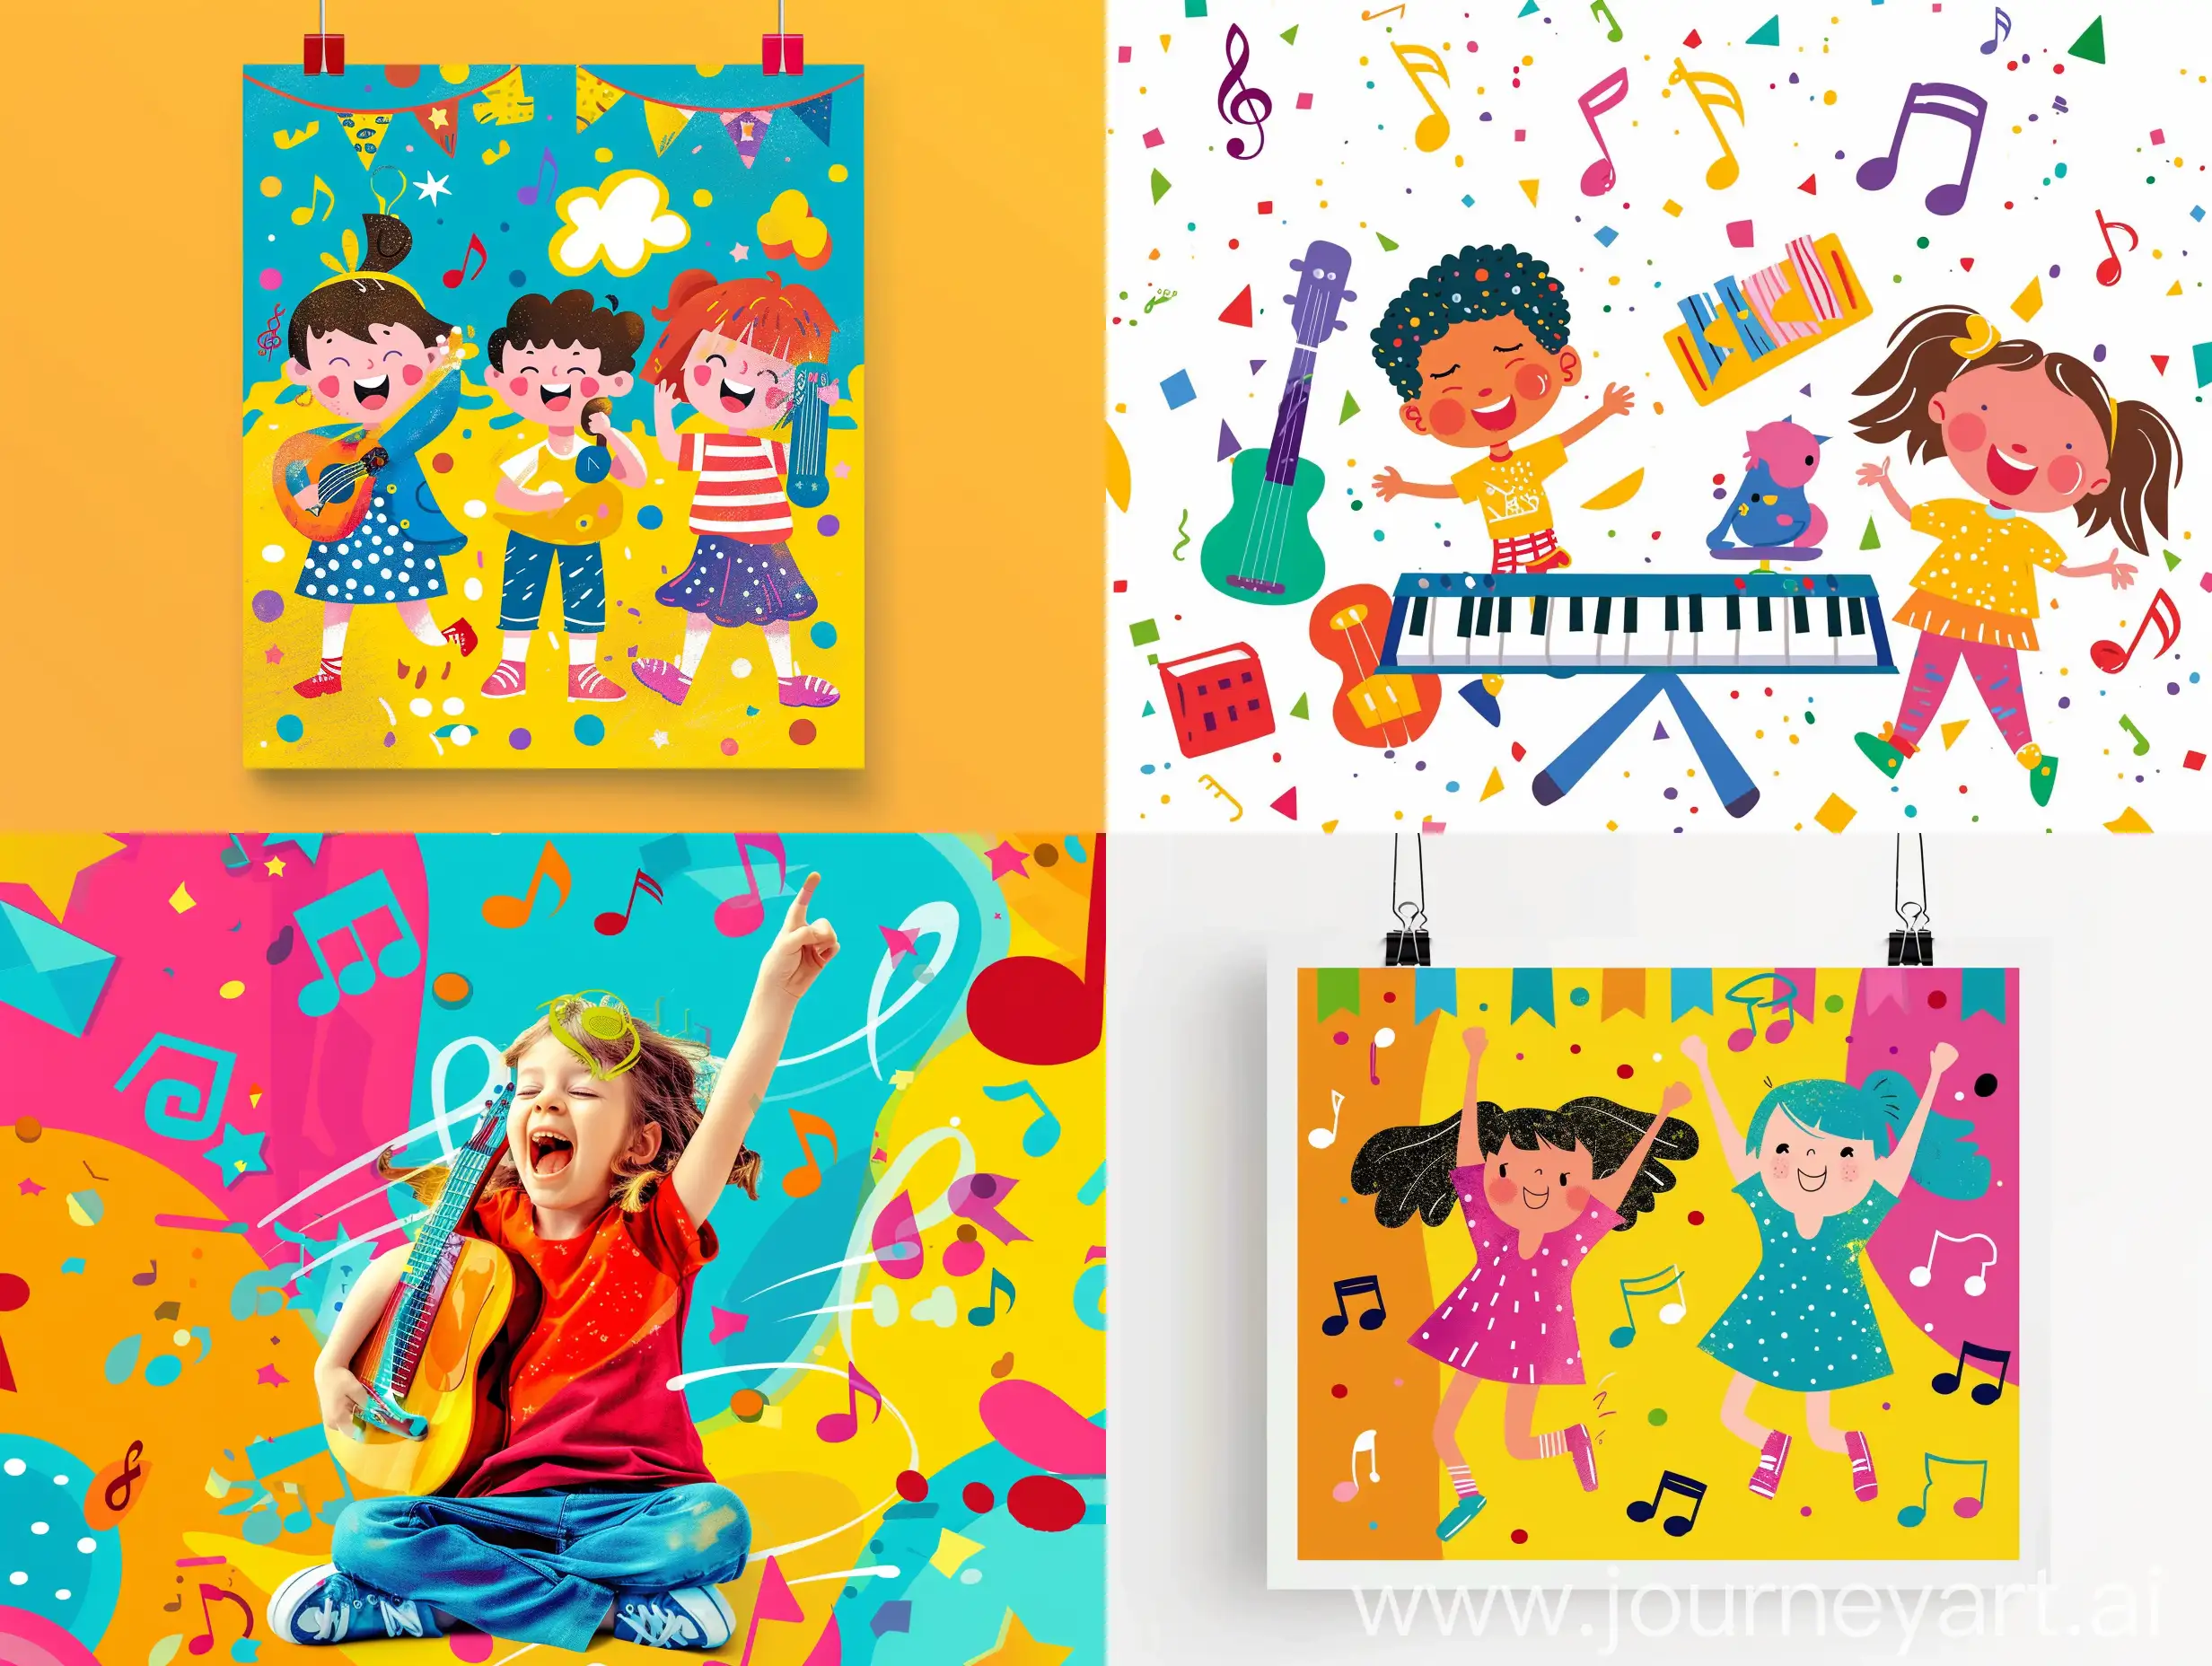 Афиша на детское мероприятие яркие цвета. Связанно с музыкой